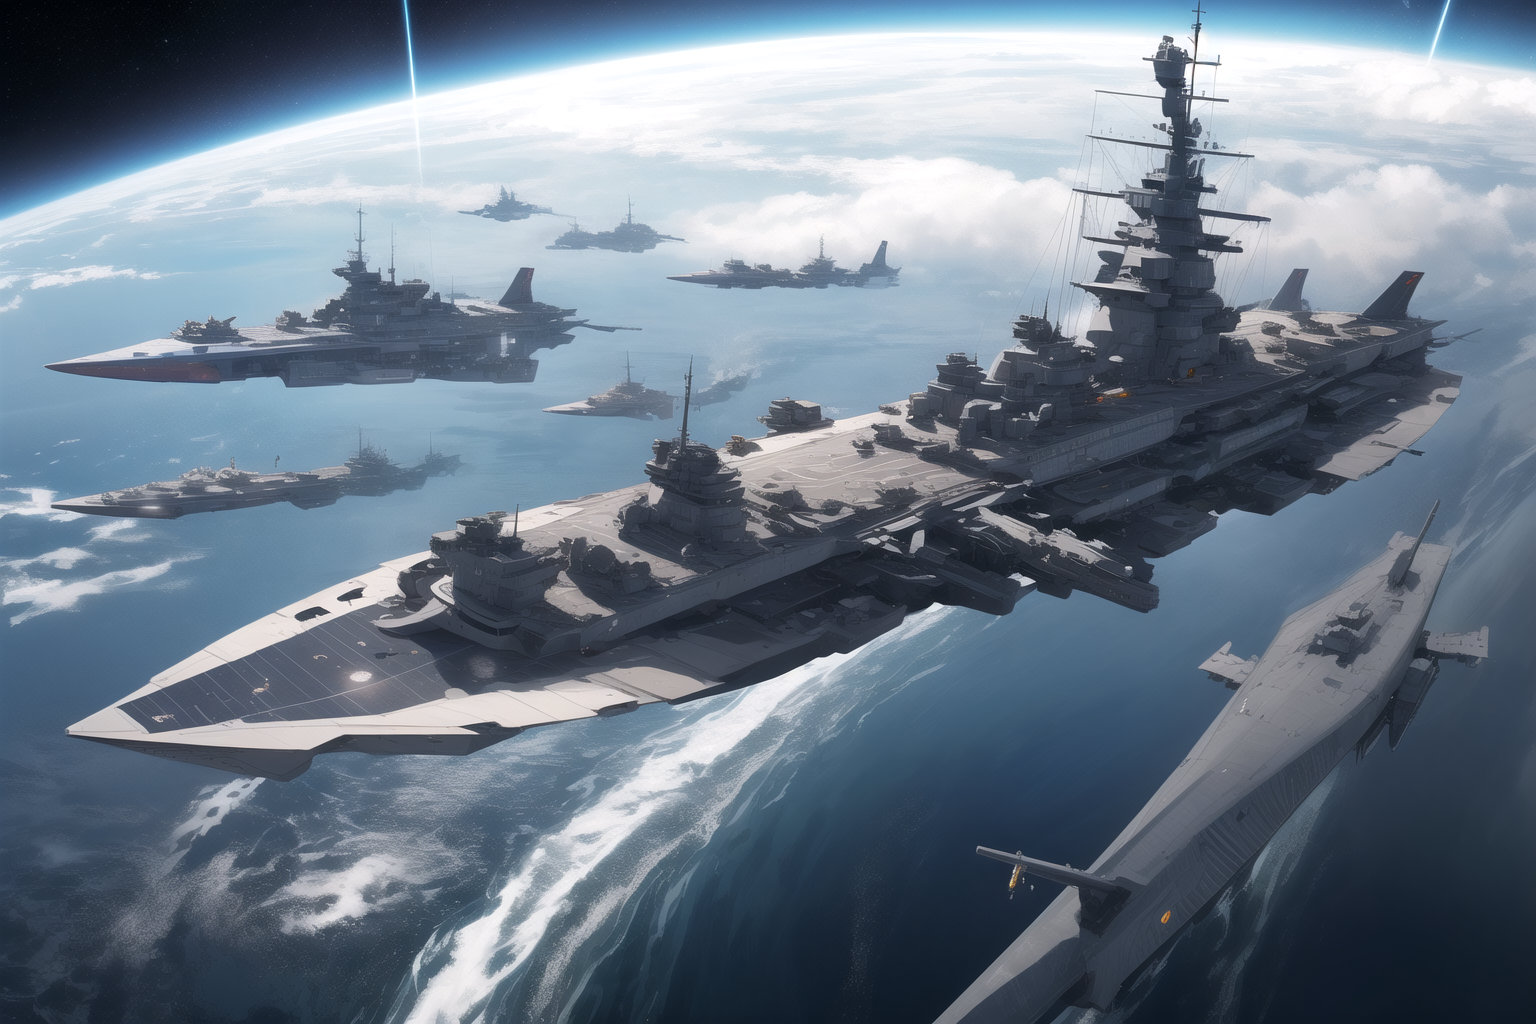 Space, warships, battle